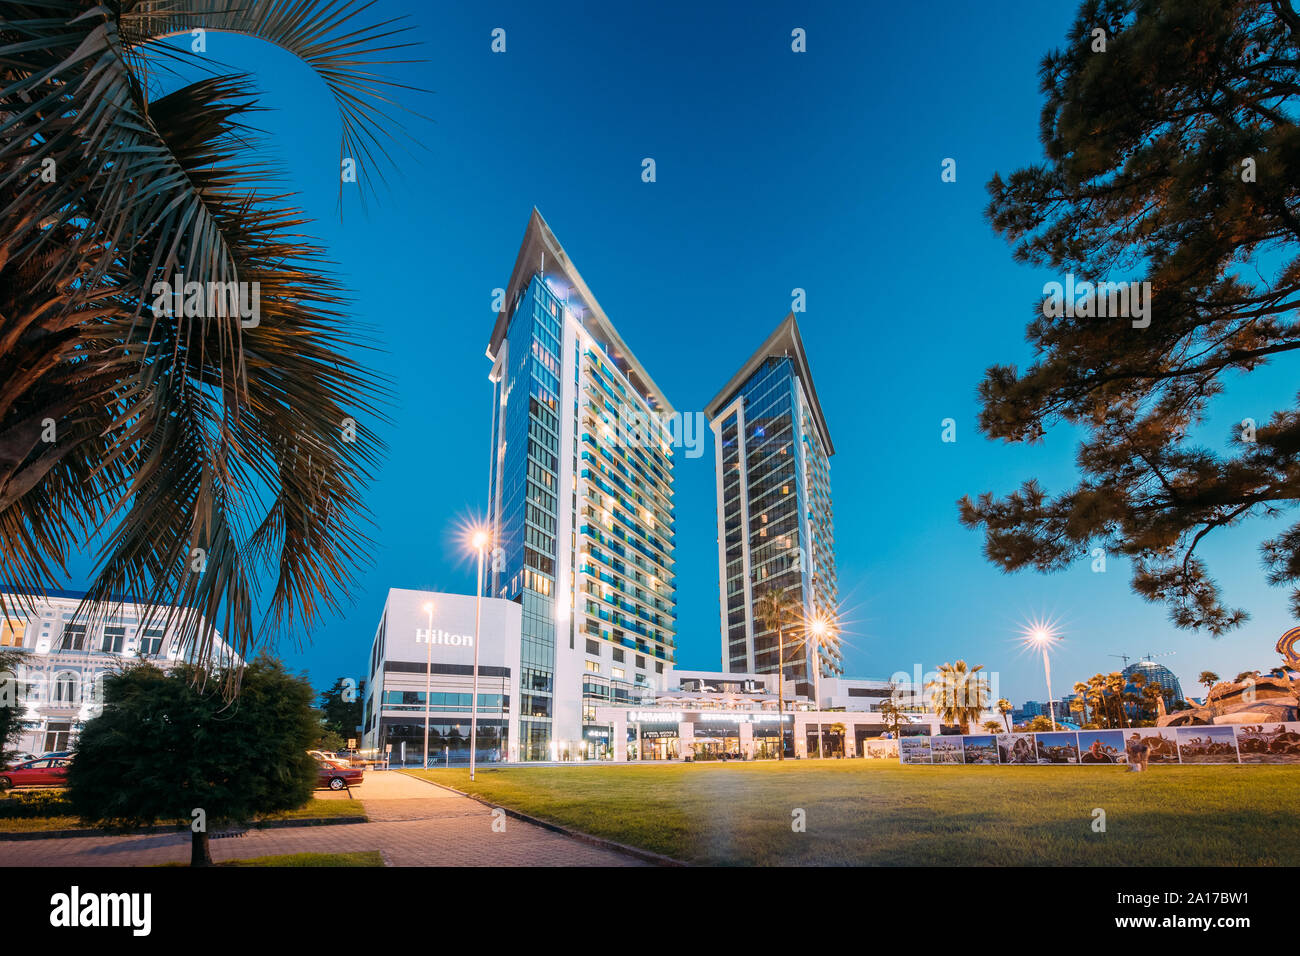 Batumi, Adscharien, Georgien - 10. September 2017: Gebäude des Hilton Hotel in Abend oder Nacht Illuminationen. Die städtische Architektur der georgischen Stadt O Stockfoto